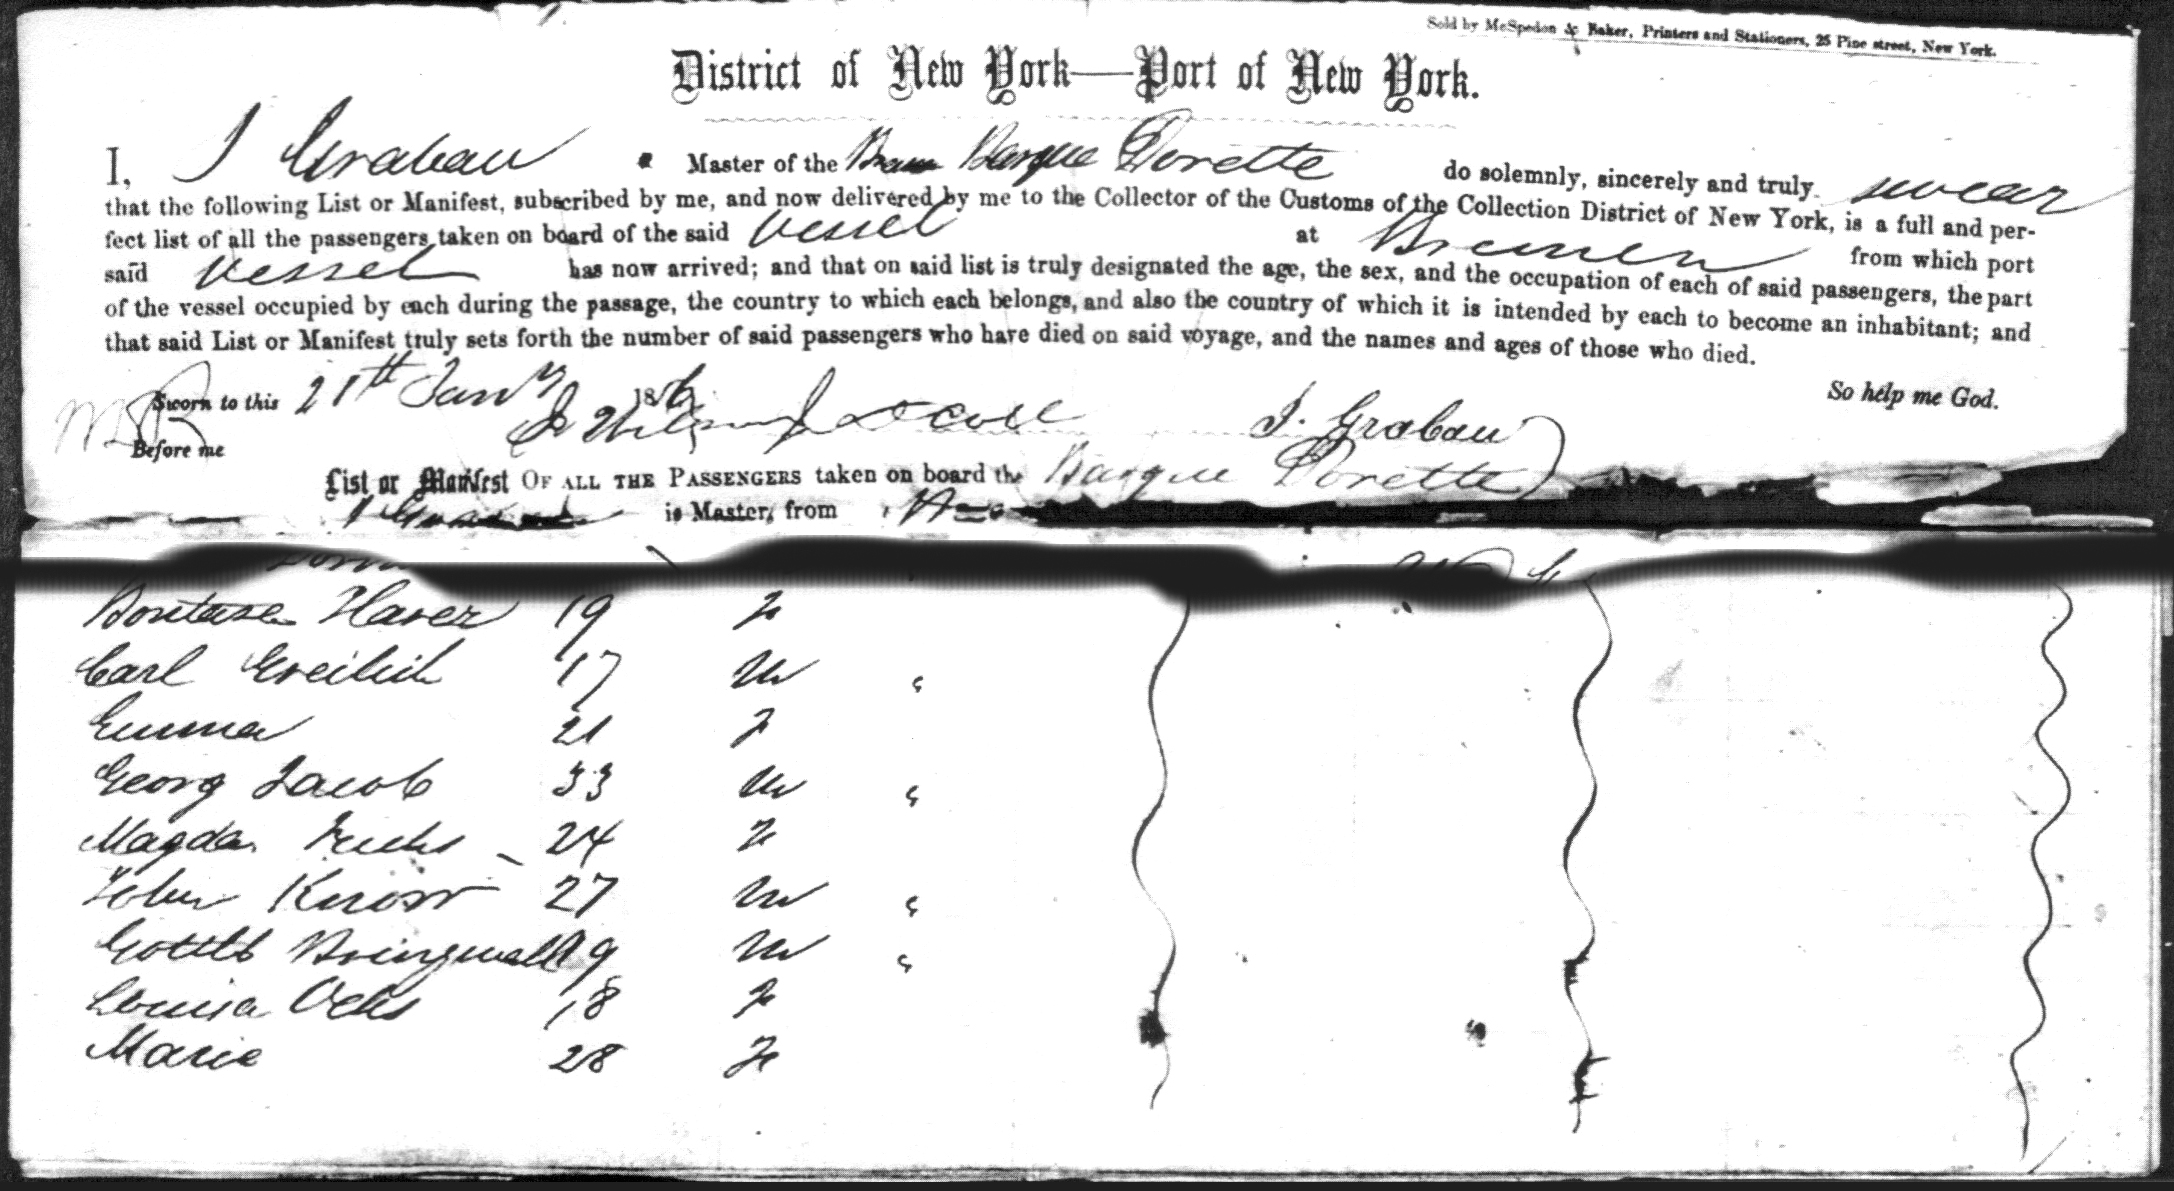 1856 Passenger list for the barque Dorette